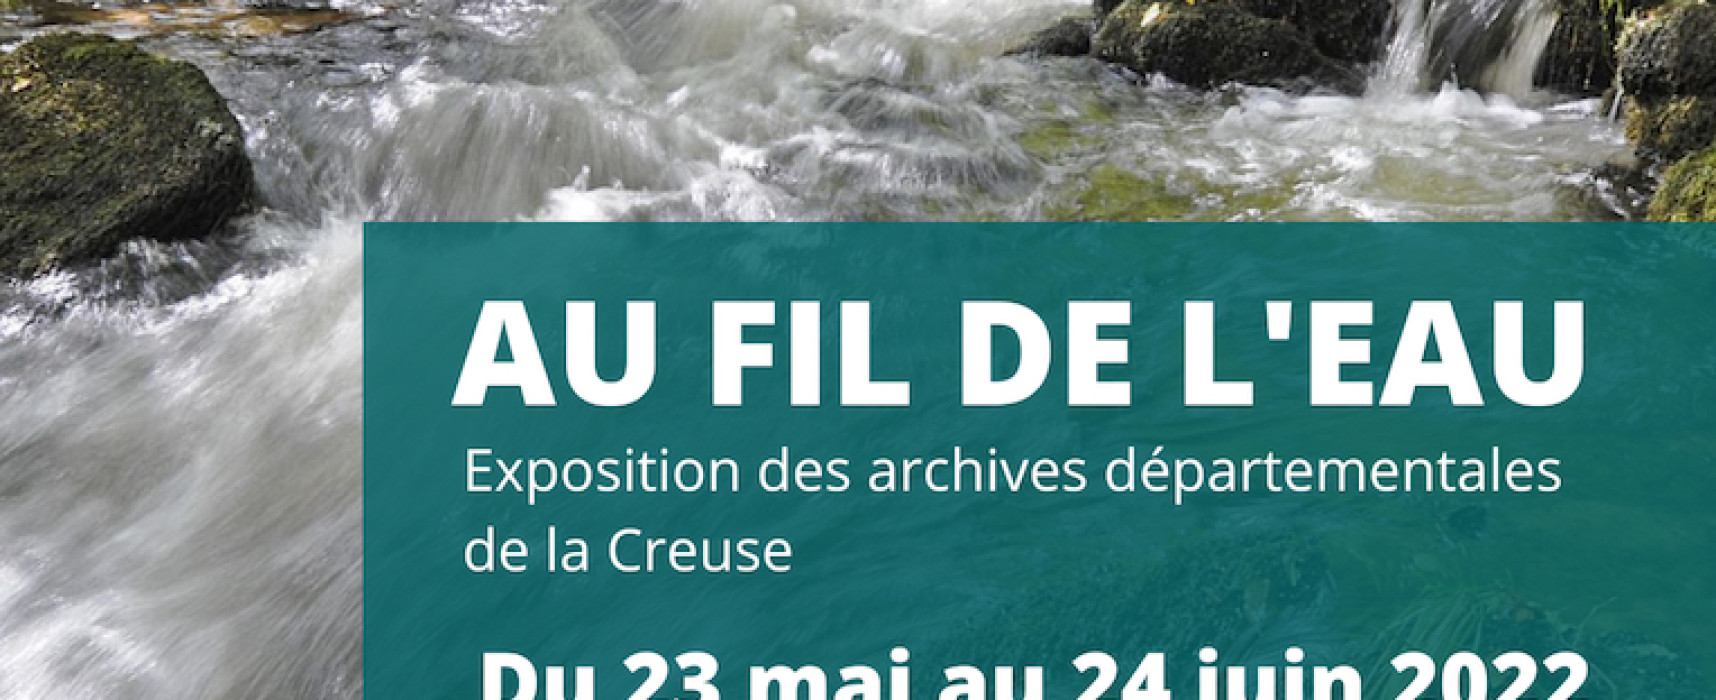 Exposition « Au fil de l’eau » – Felletin du lundi 23 mai au vendredi 24 juin 2022